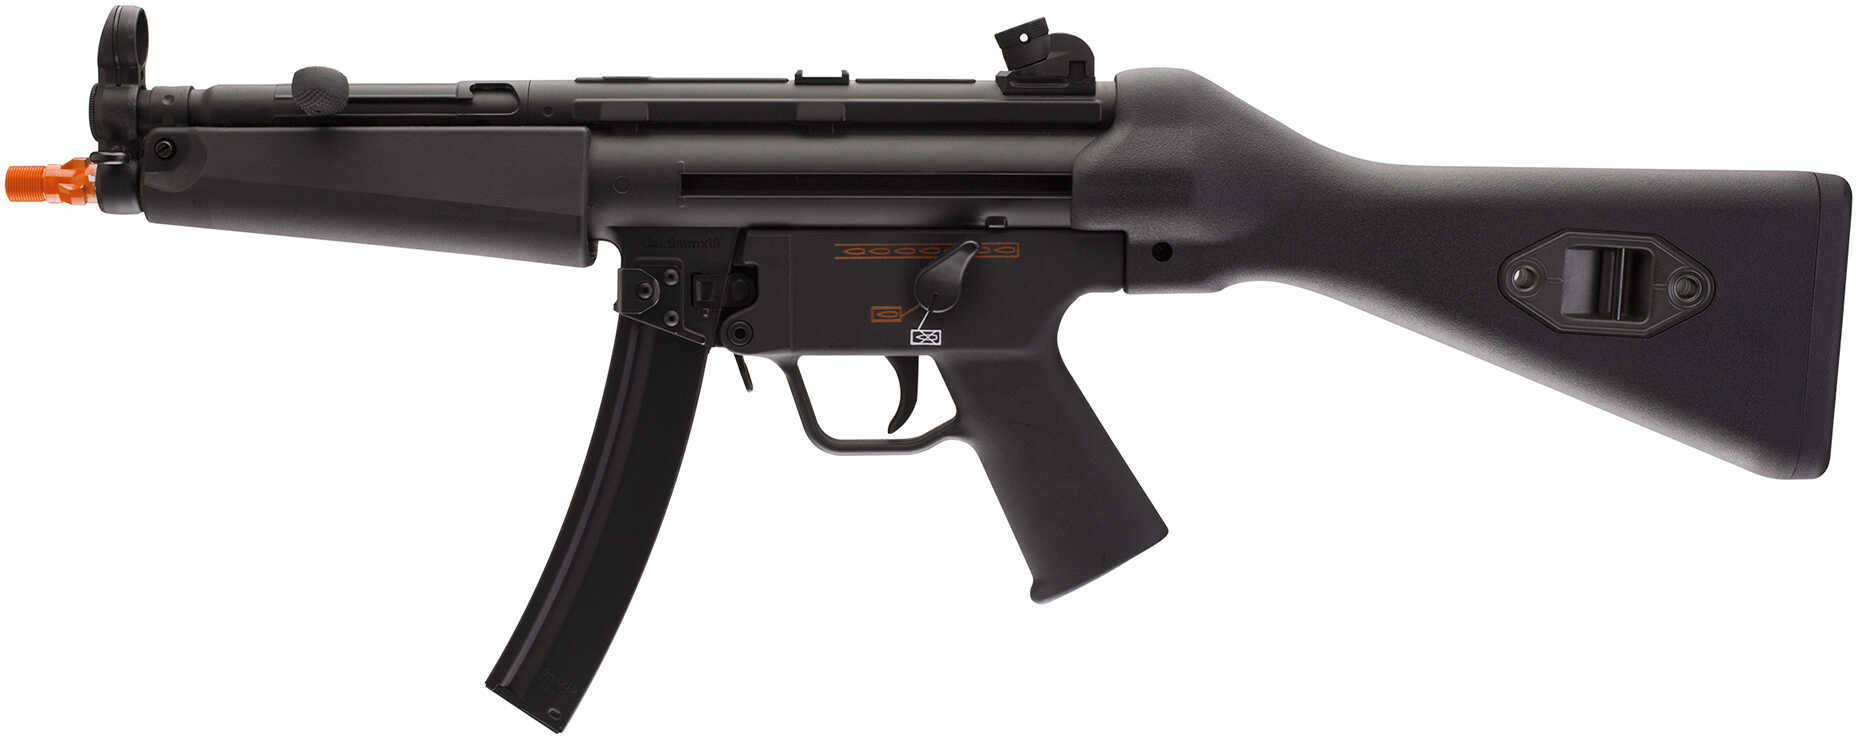 Umarex USA Heckler & Koch MP5 A4 Soft Air Rifle, 8" Barrel, 250 Rounds, Black